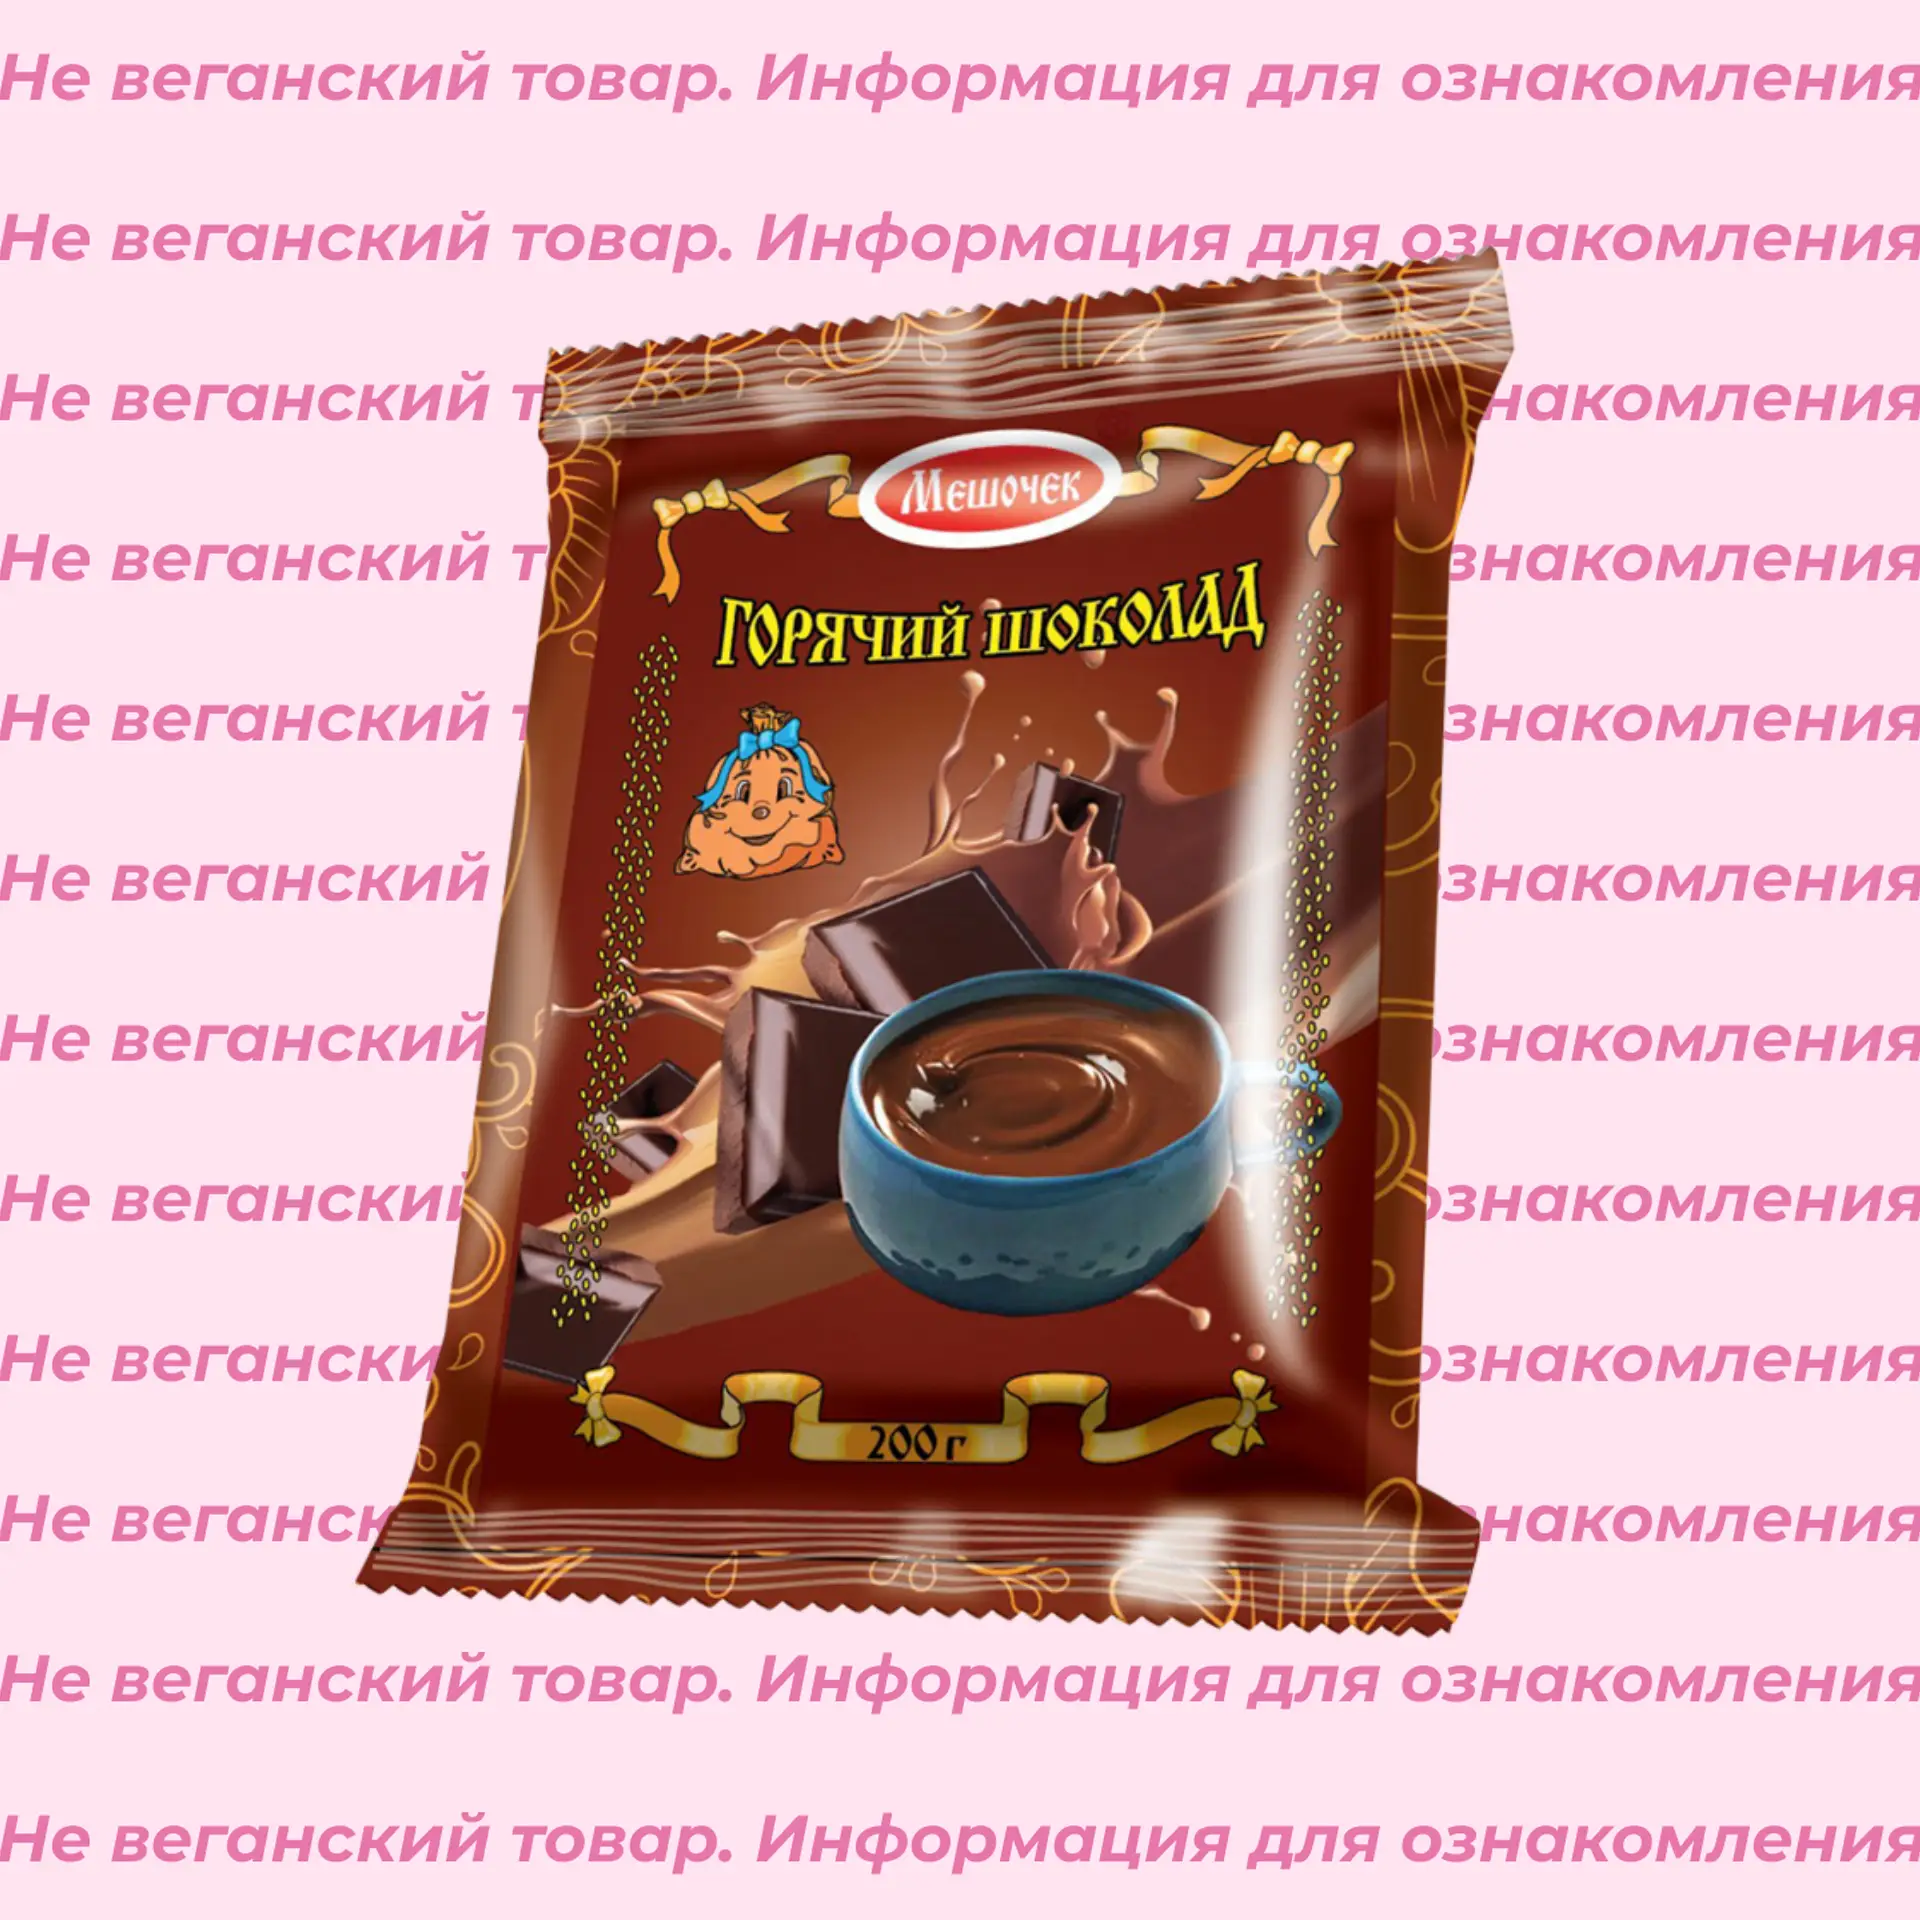 Невеганский горячий шоколад Мешочек 200 г